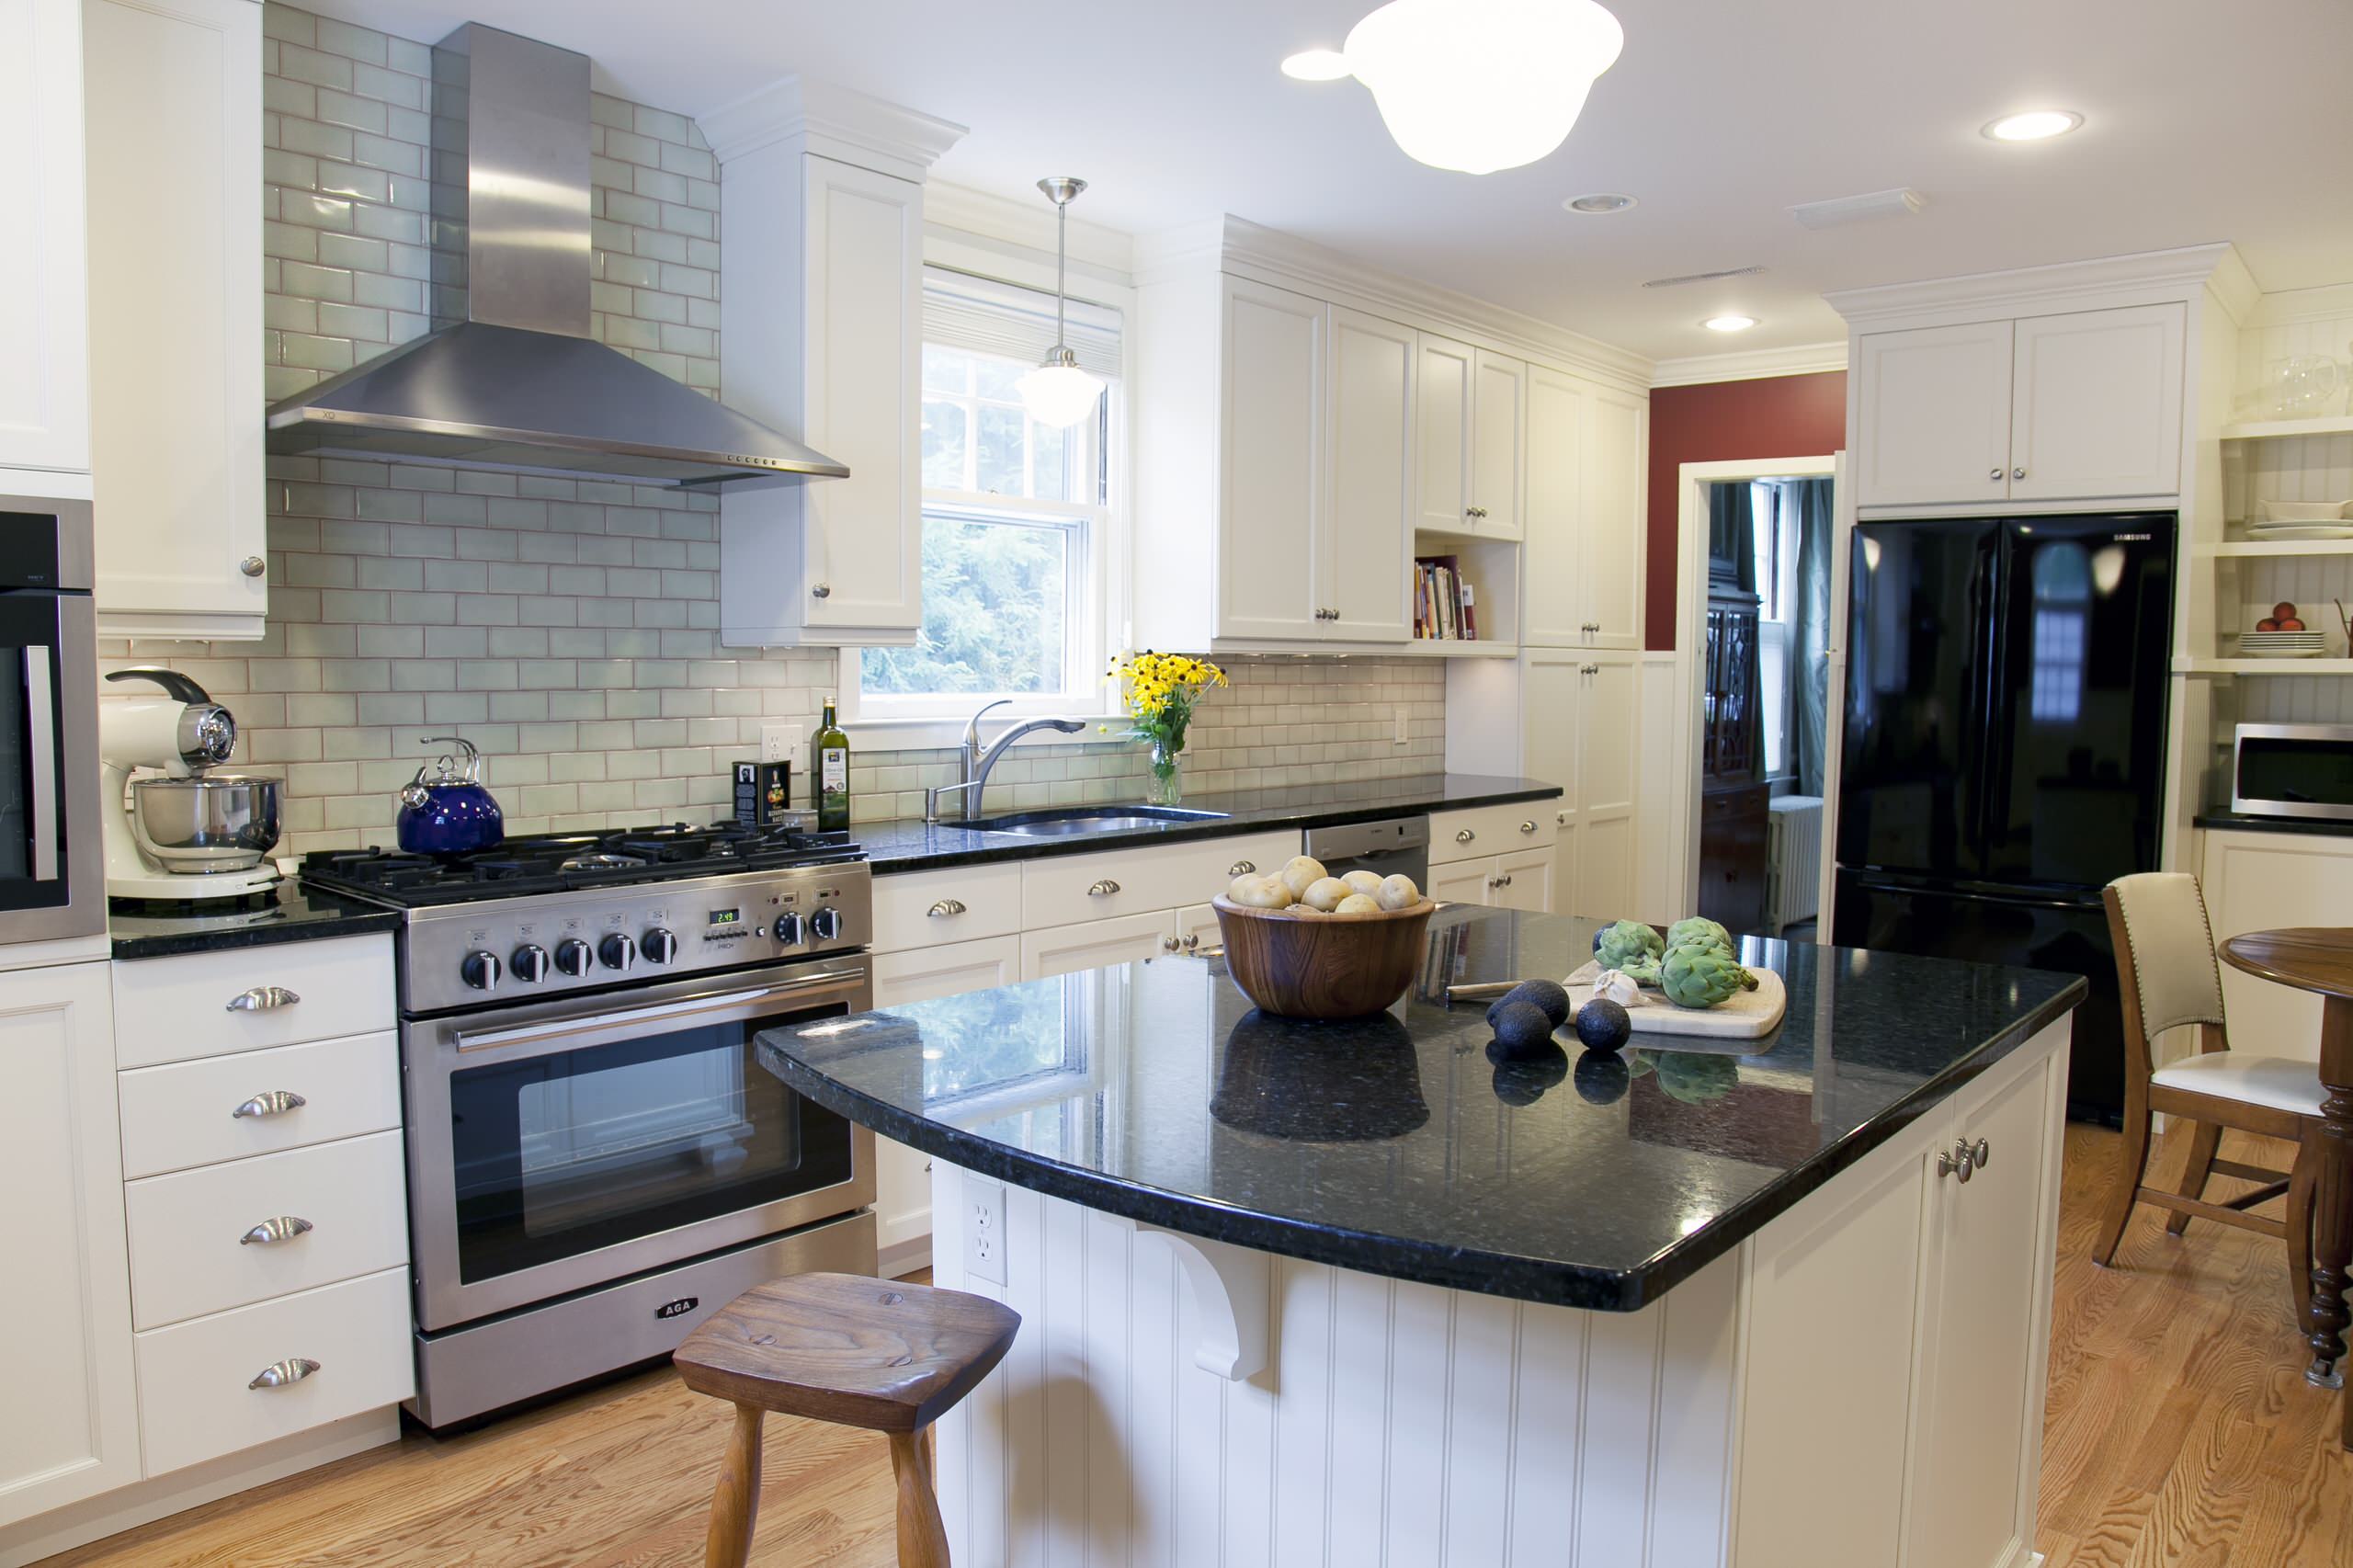 kitchen backsplash ideas black granite countertops